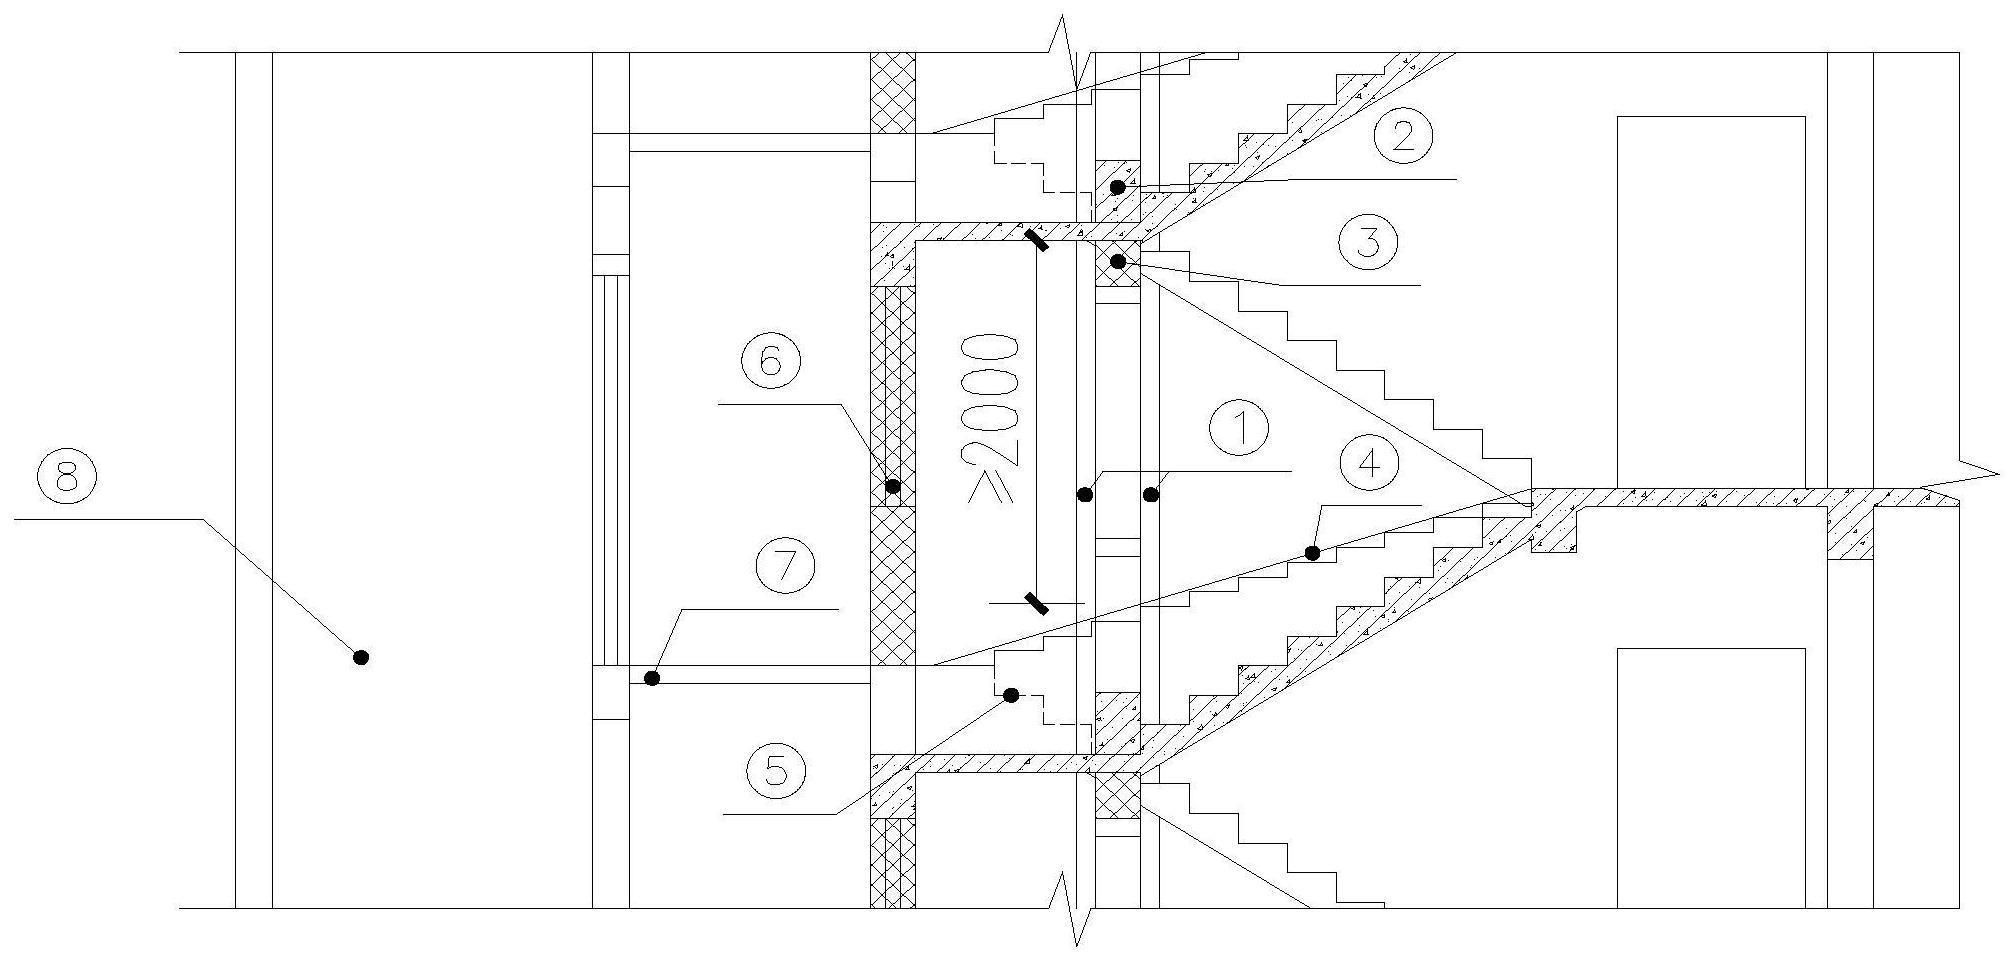 一种既有建筑加装电梯的施工方法与流程